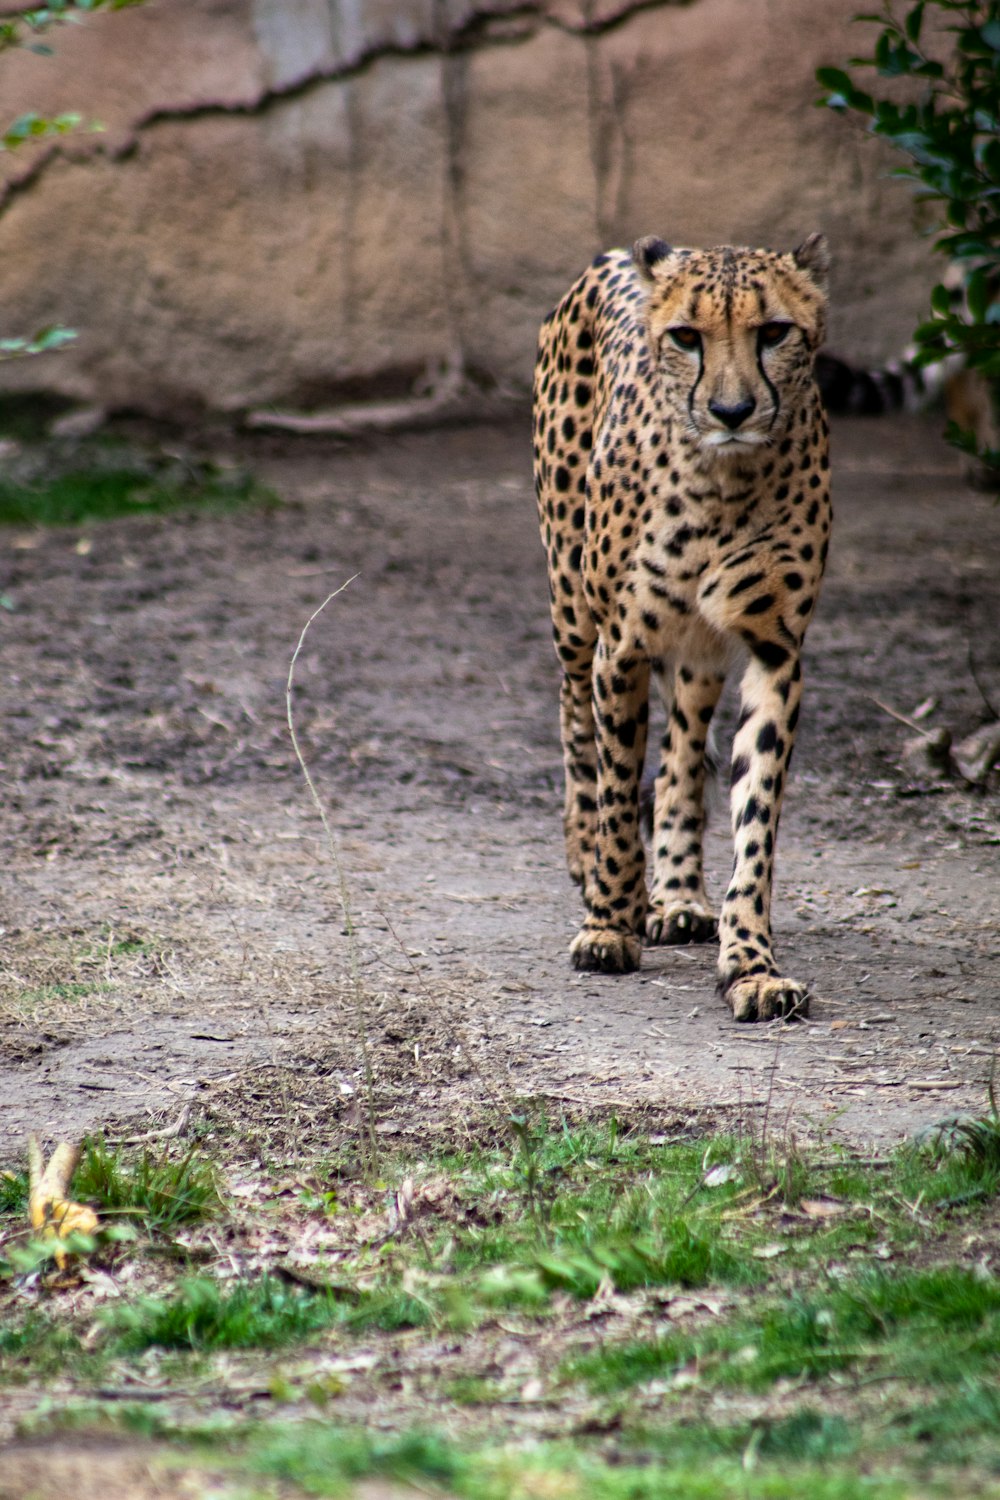 cheetah walking on brown field during daytime